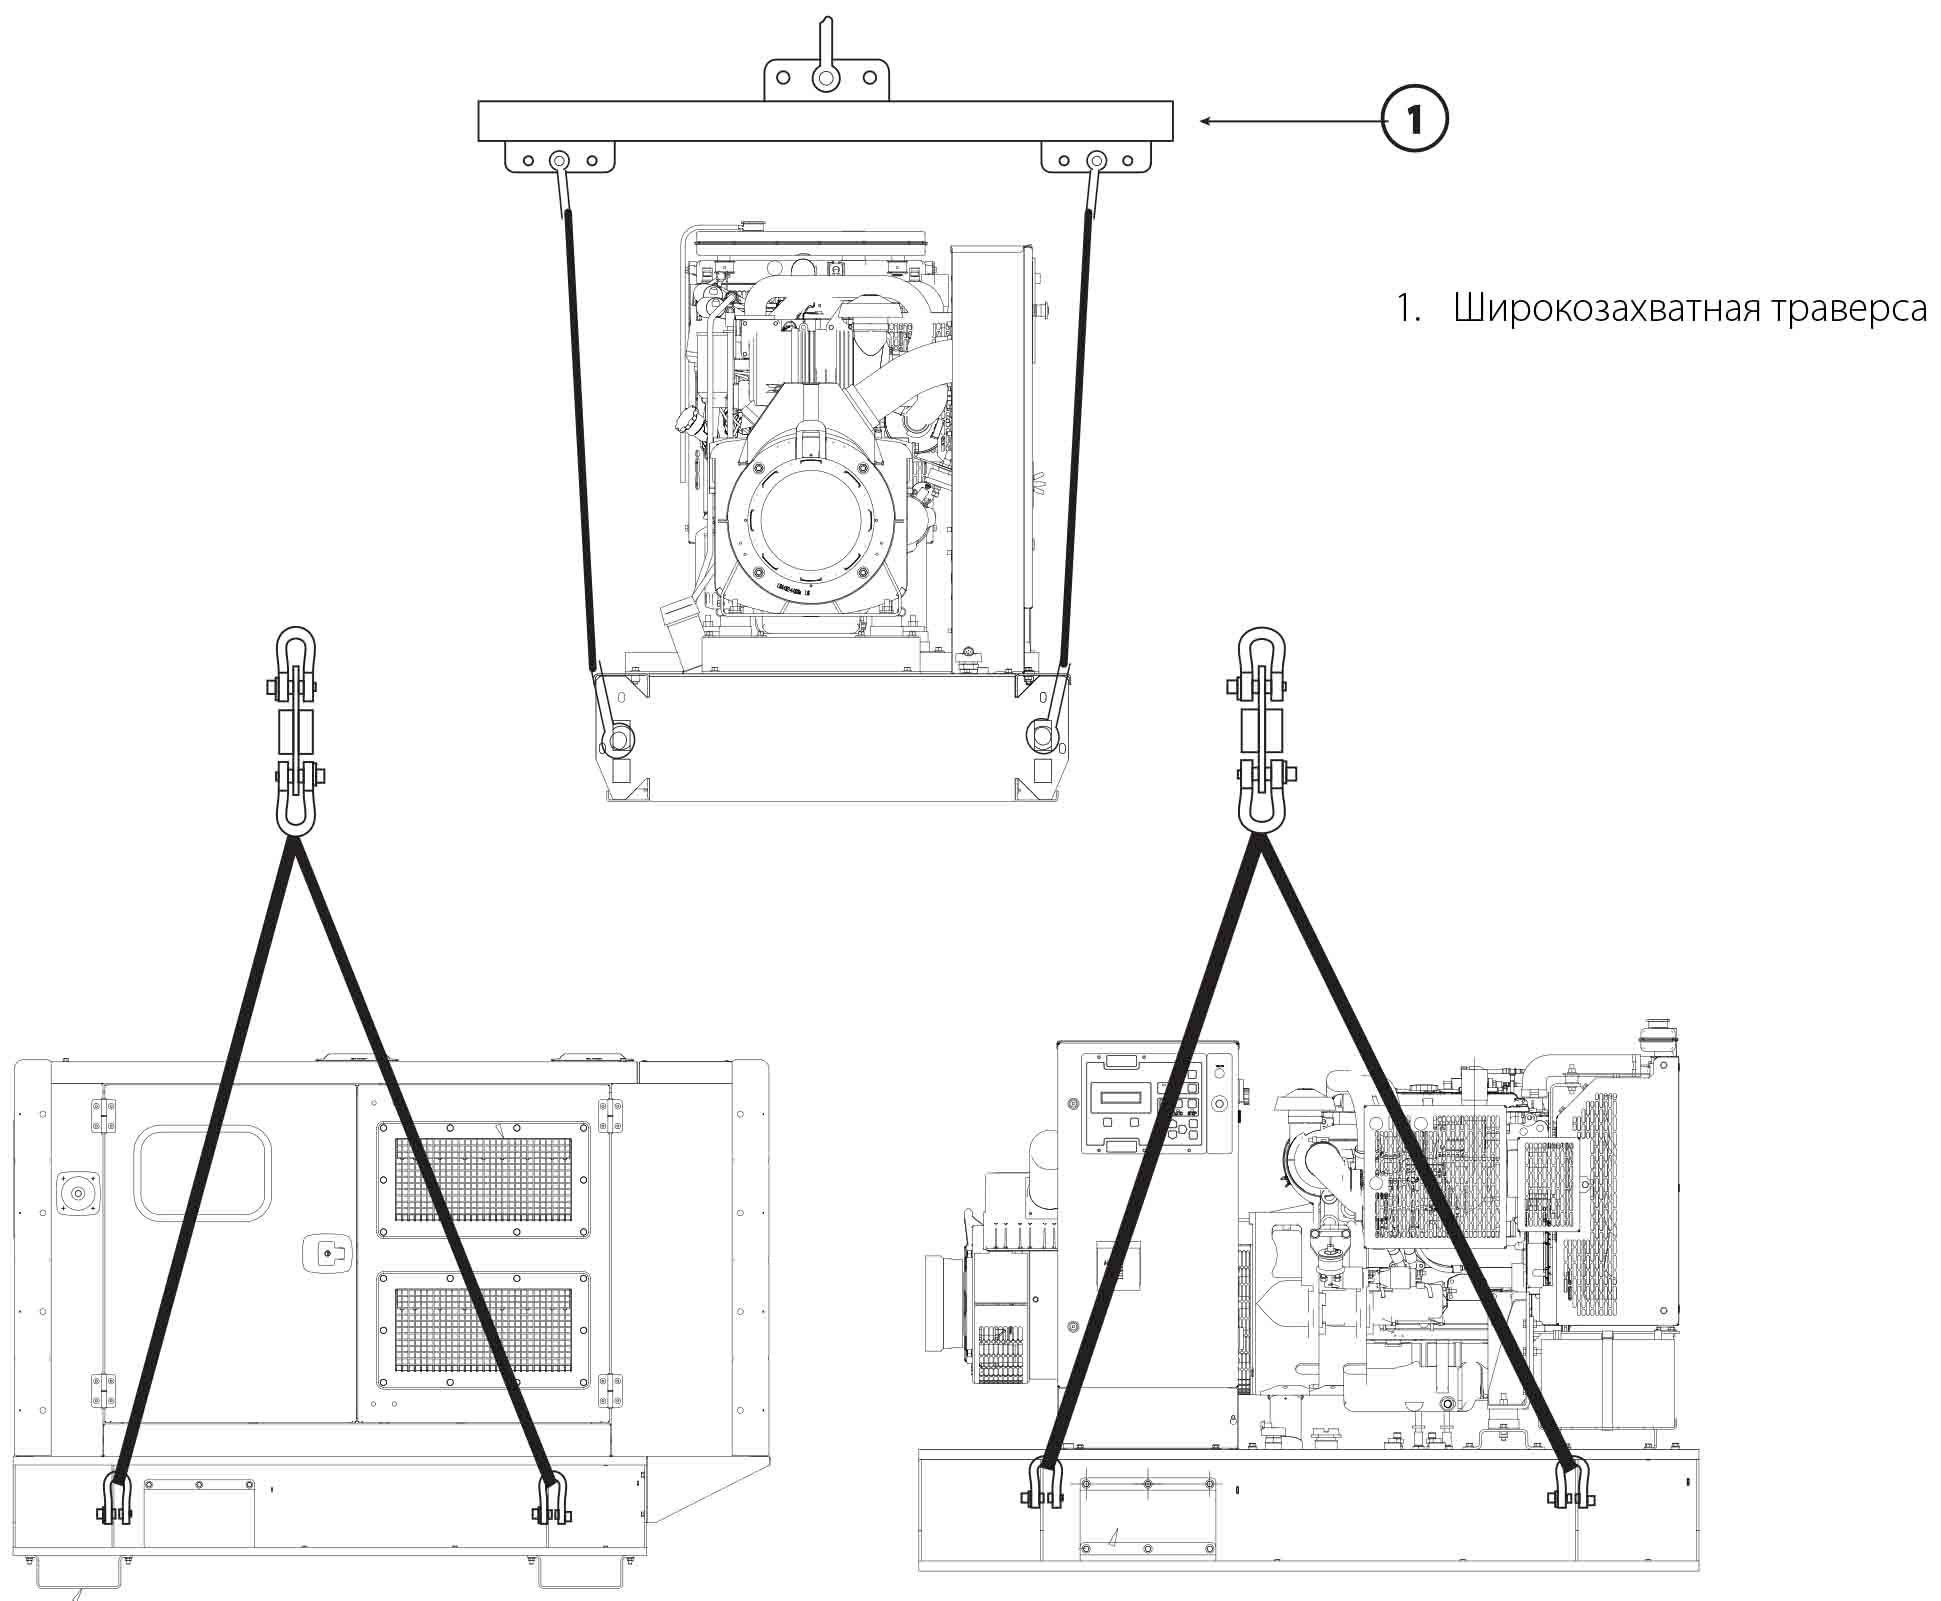 Дизельні генератори - правильна схема підйому (відкритого і закритого виконання)